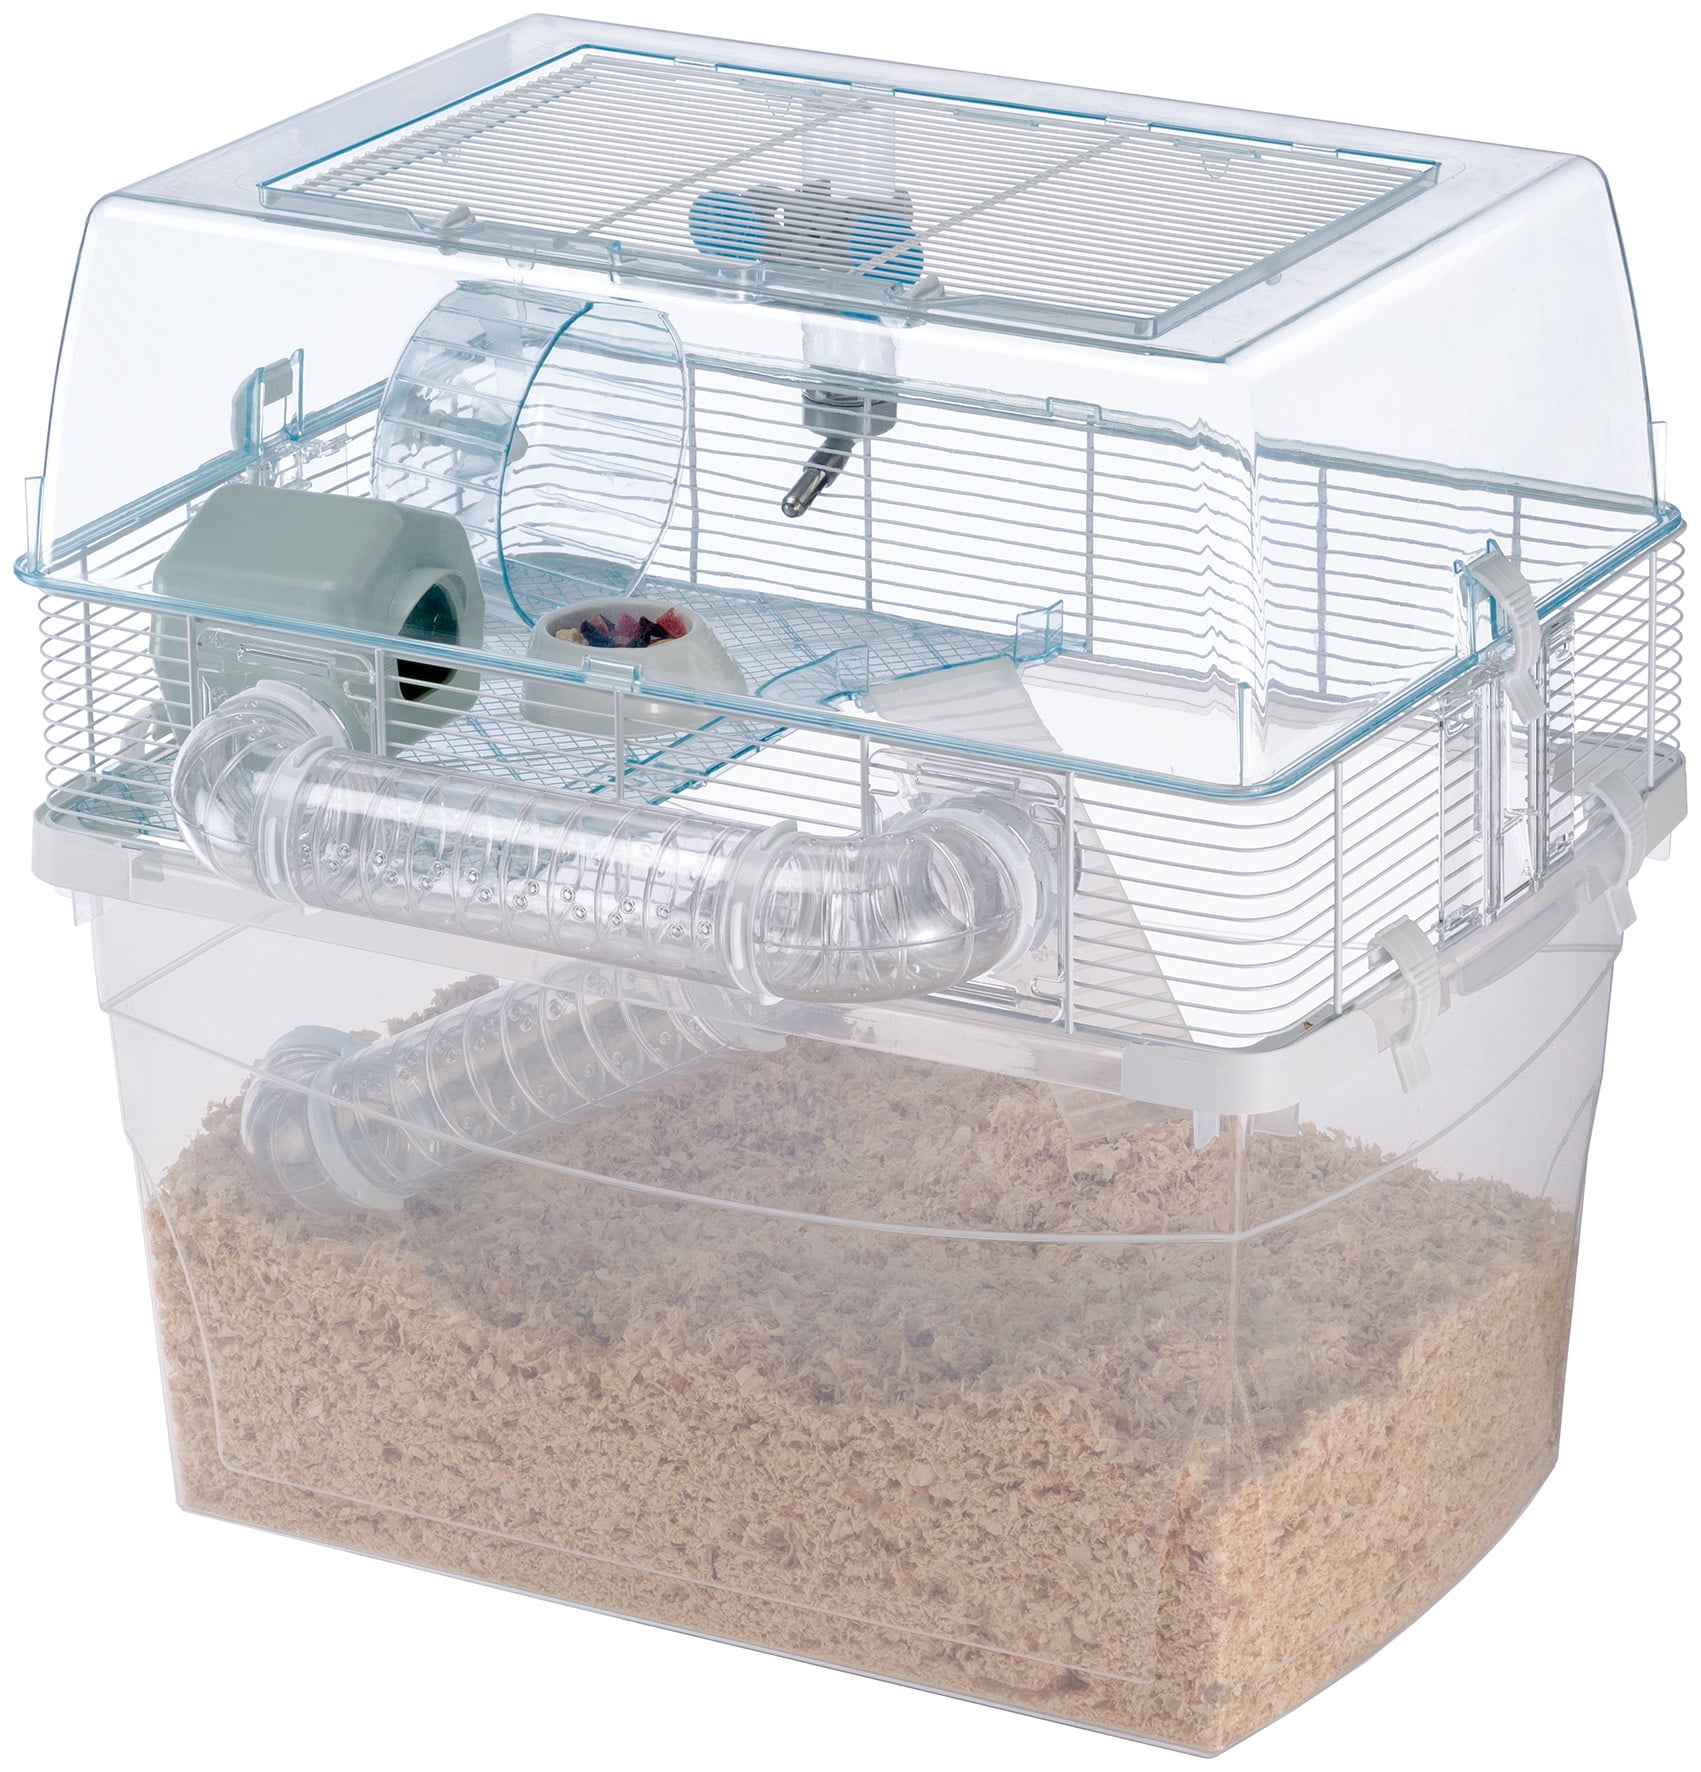 begaan Paar uitlokken Ferplast Duna Space Hamster Cage Ideal for Gerbils & Hamsters, Includes All  Accessories - Walmart.com